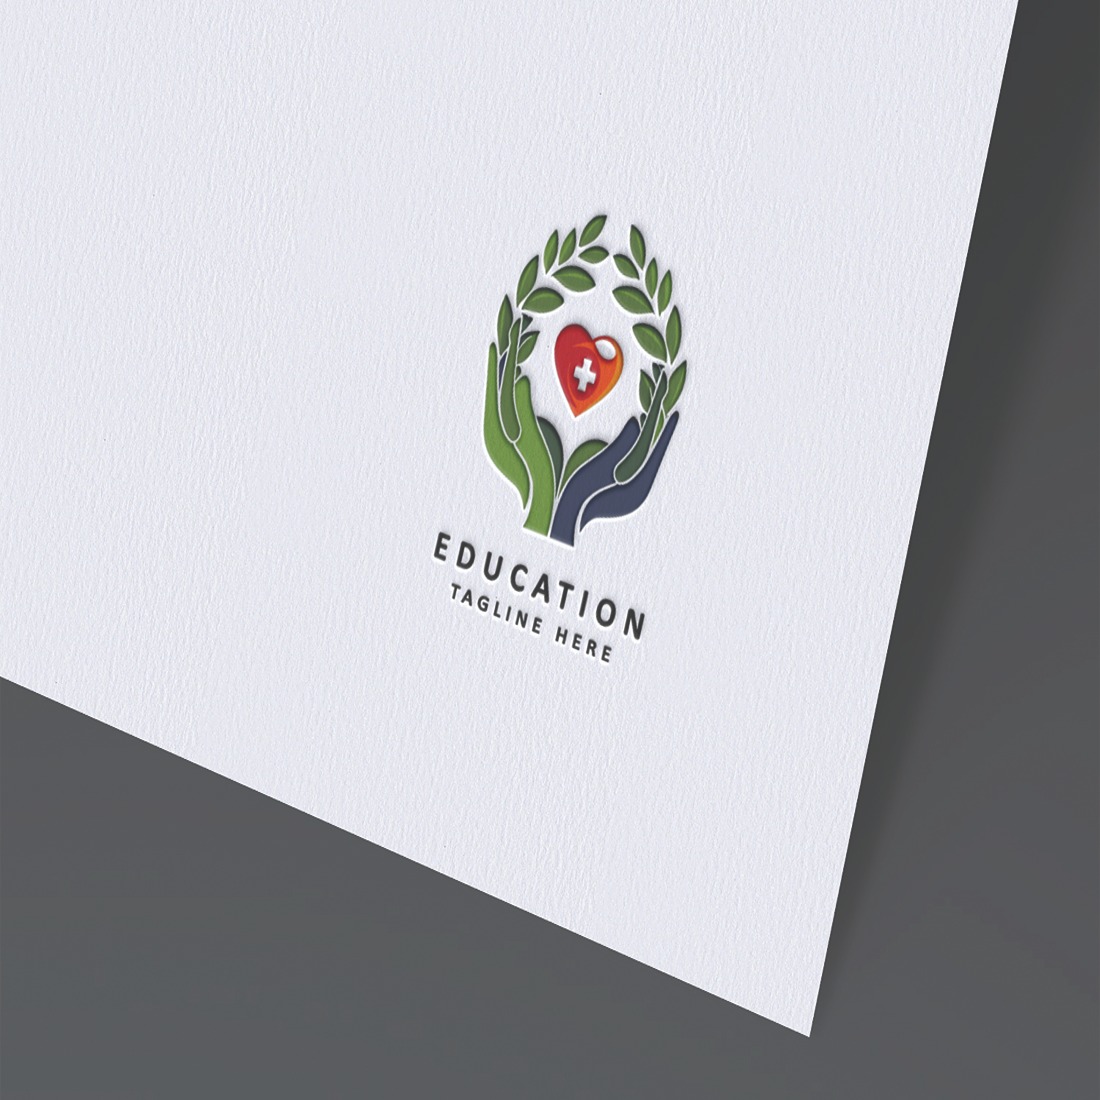 h education logo 11zon 33